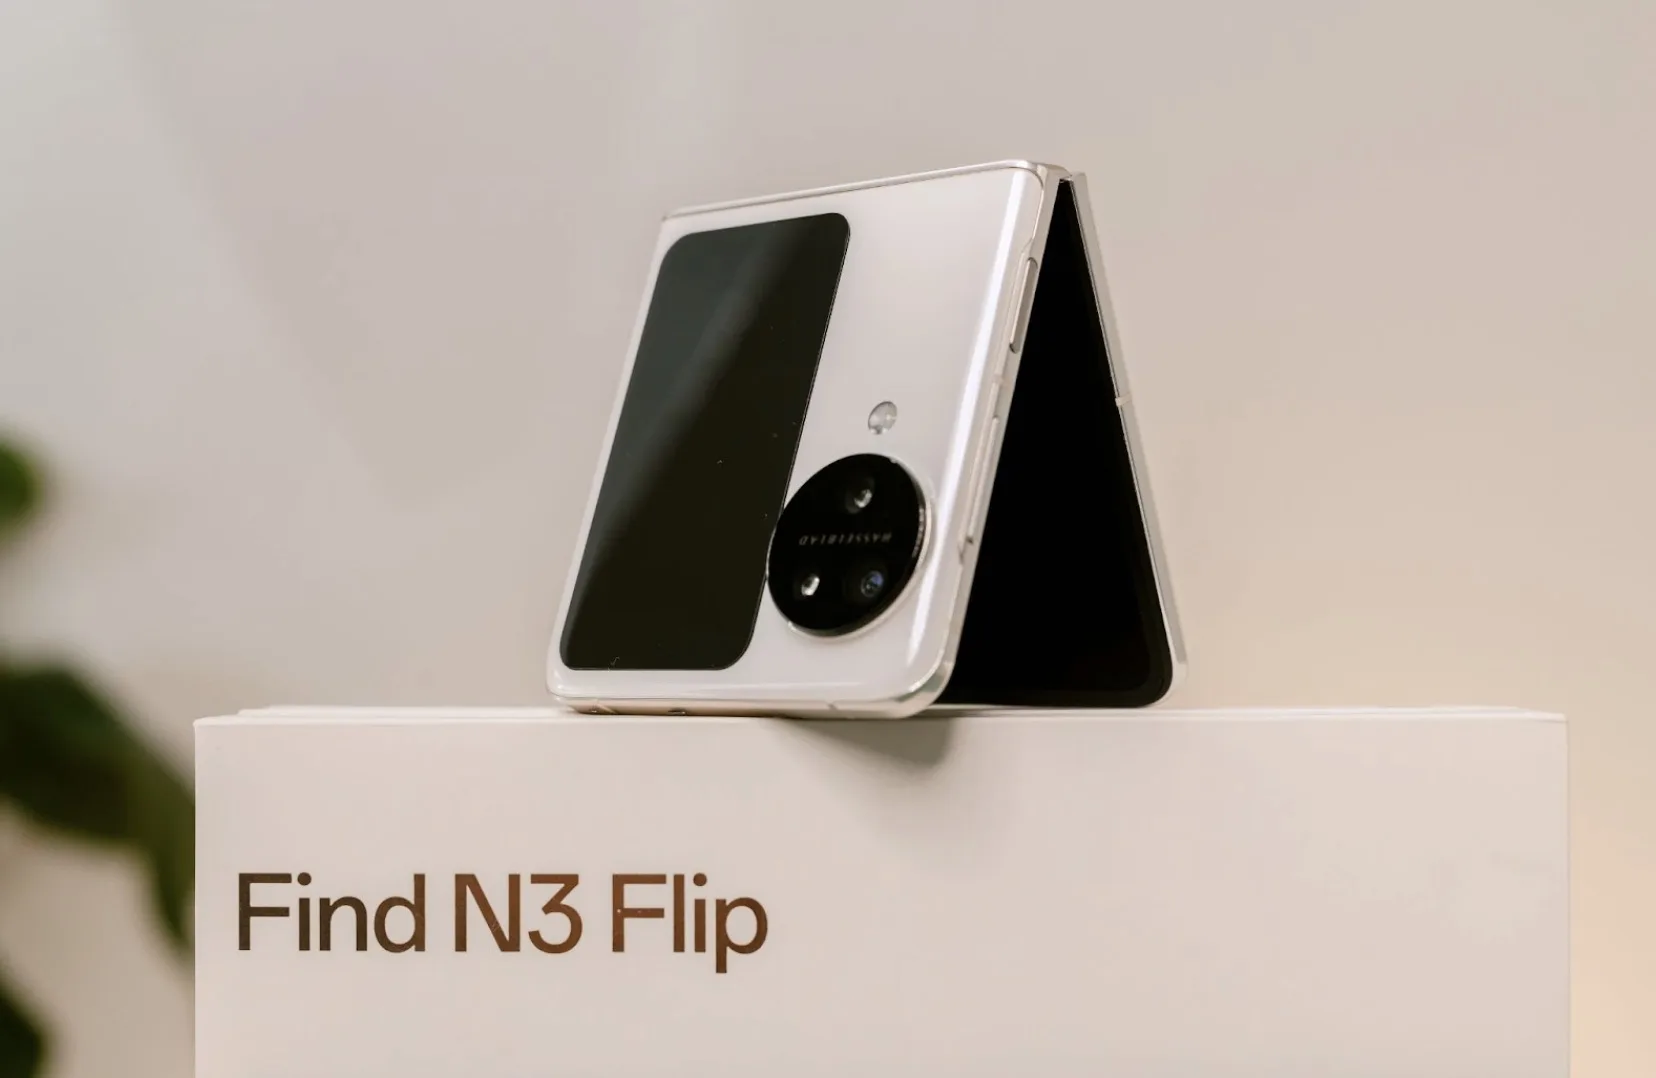 Oppo find n3 flip đang được nhiều người dùng quan tâm bởi thiết kế sang trọng